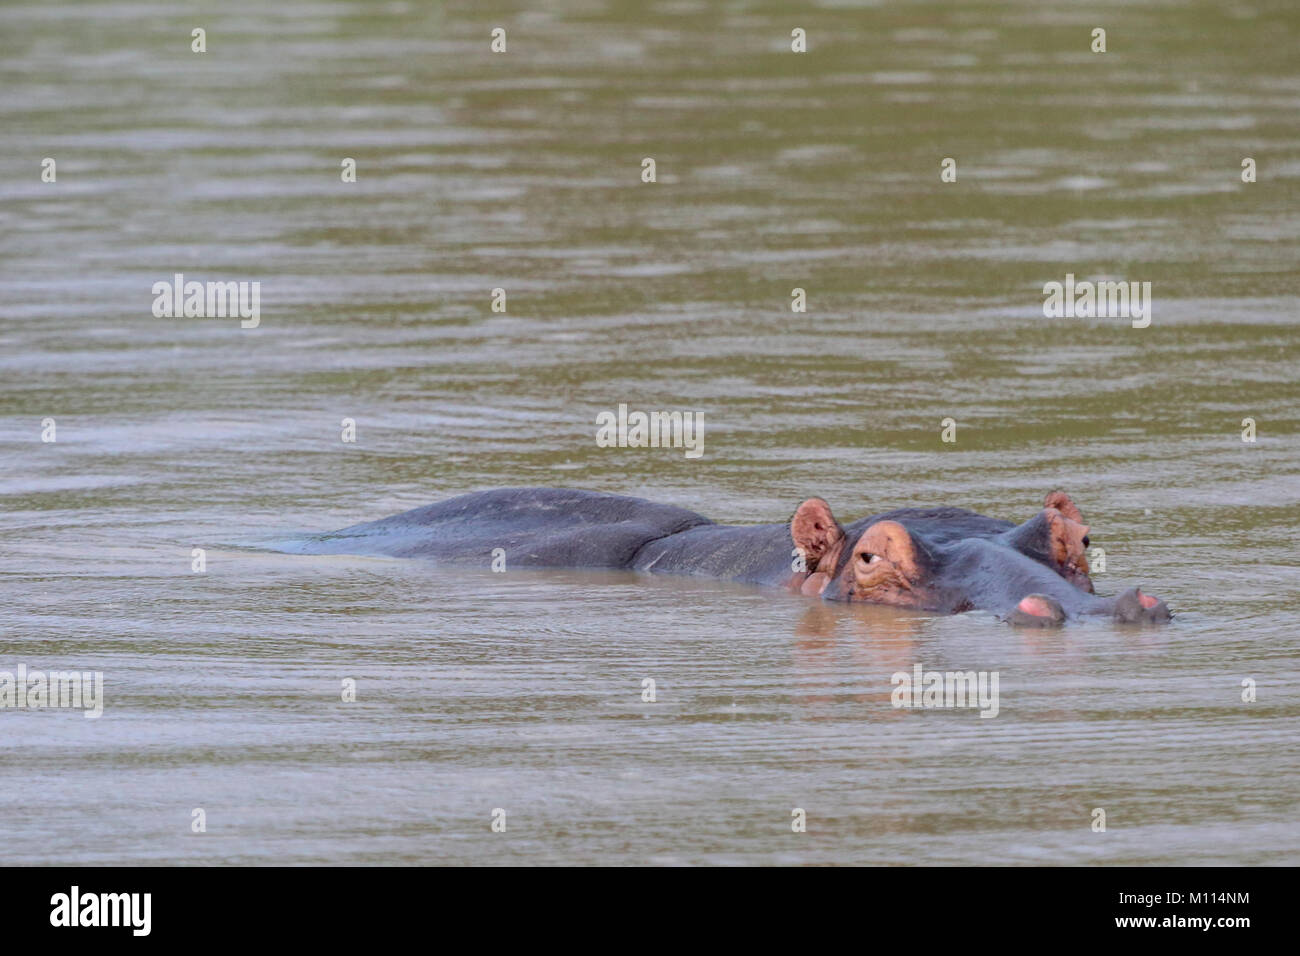 Hippo revolcarse en el lago en la lluvia. El cuerpo y la cabeza justo por encima del agua. Foto de stock